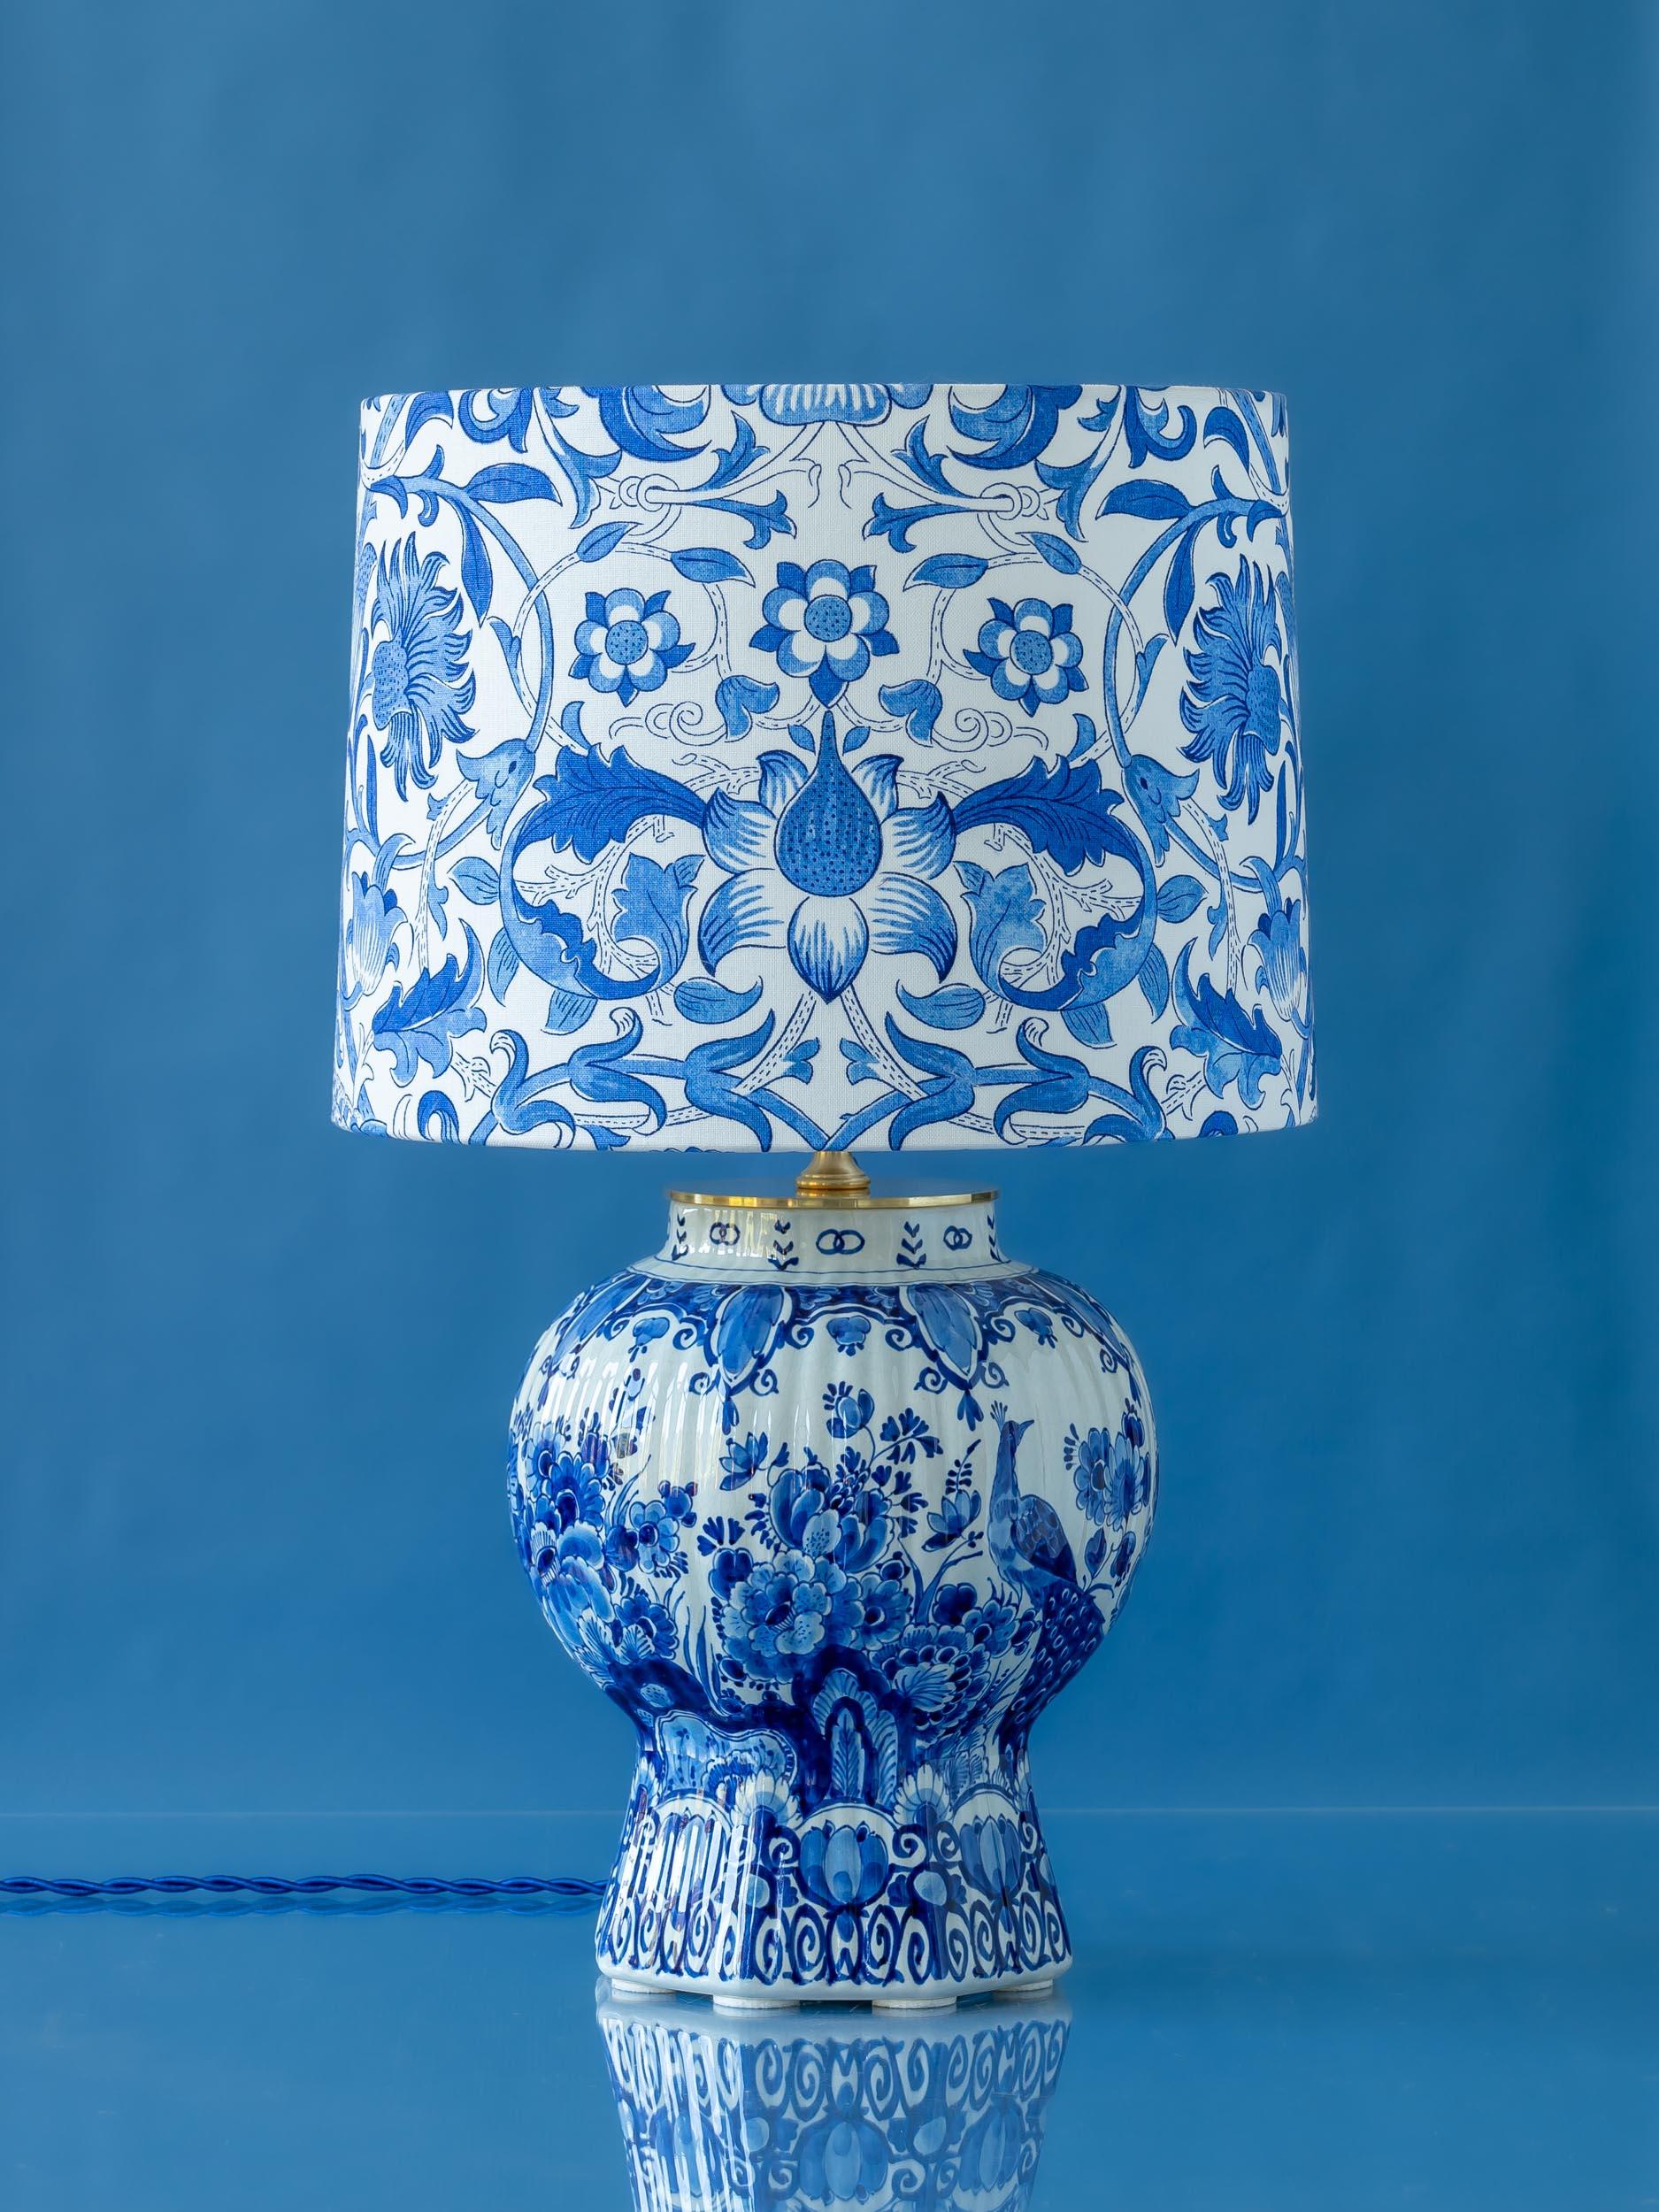 Voici By, une lampe unique en son genre, fabriquée avec amour à partir d'un magnifique vase vintage peint à la main en bleu de Delft (De Proceleyne Fles) Royal Delfts (Delfts Blauw). L'exquis vase nervuré (ou pul), qui forme la base de la lampe, a